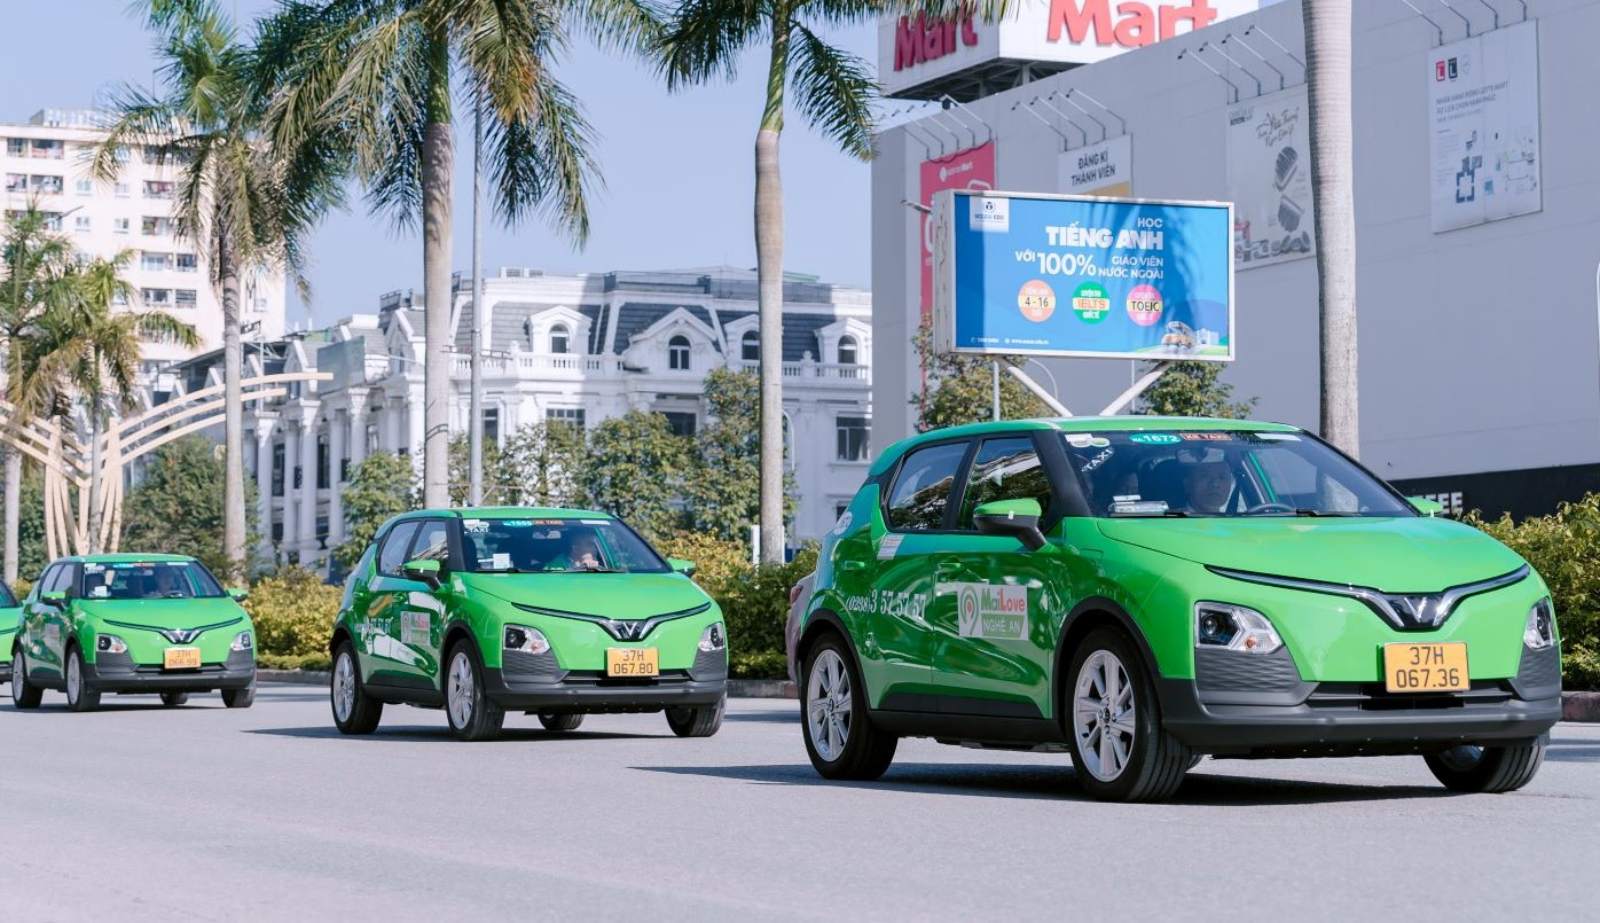 “Sếp” của Hãng taxi lớn nhất Nghệ An nói về lý do dùng xe điện